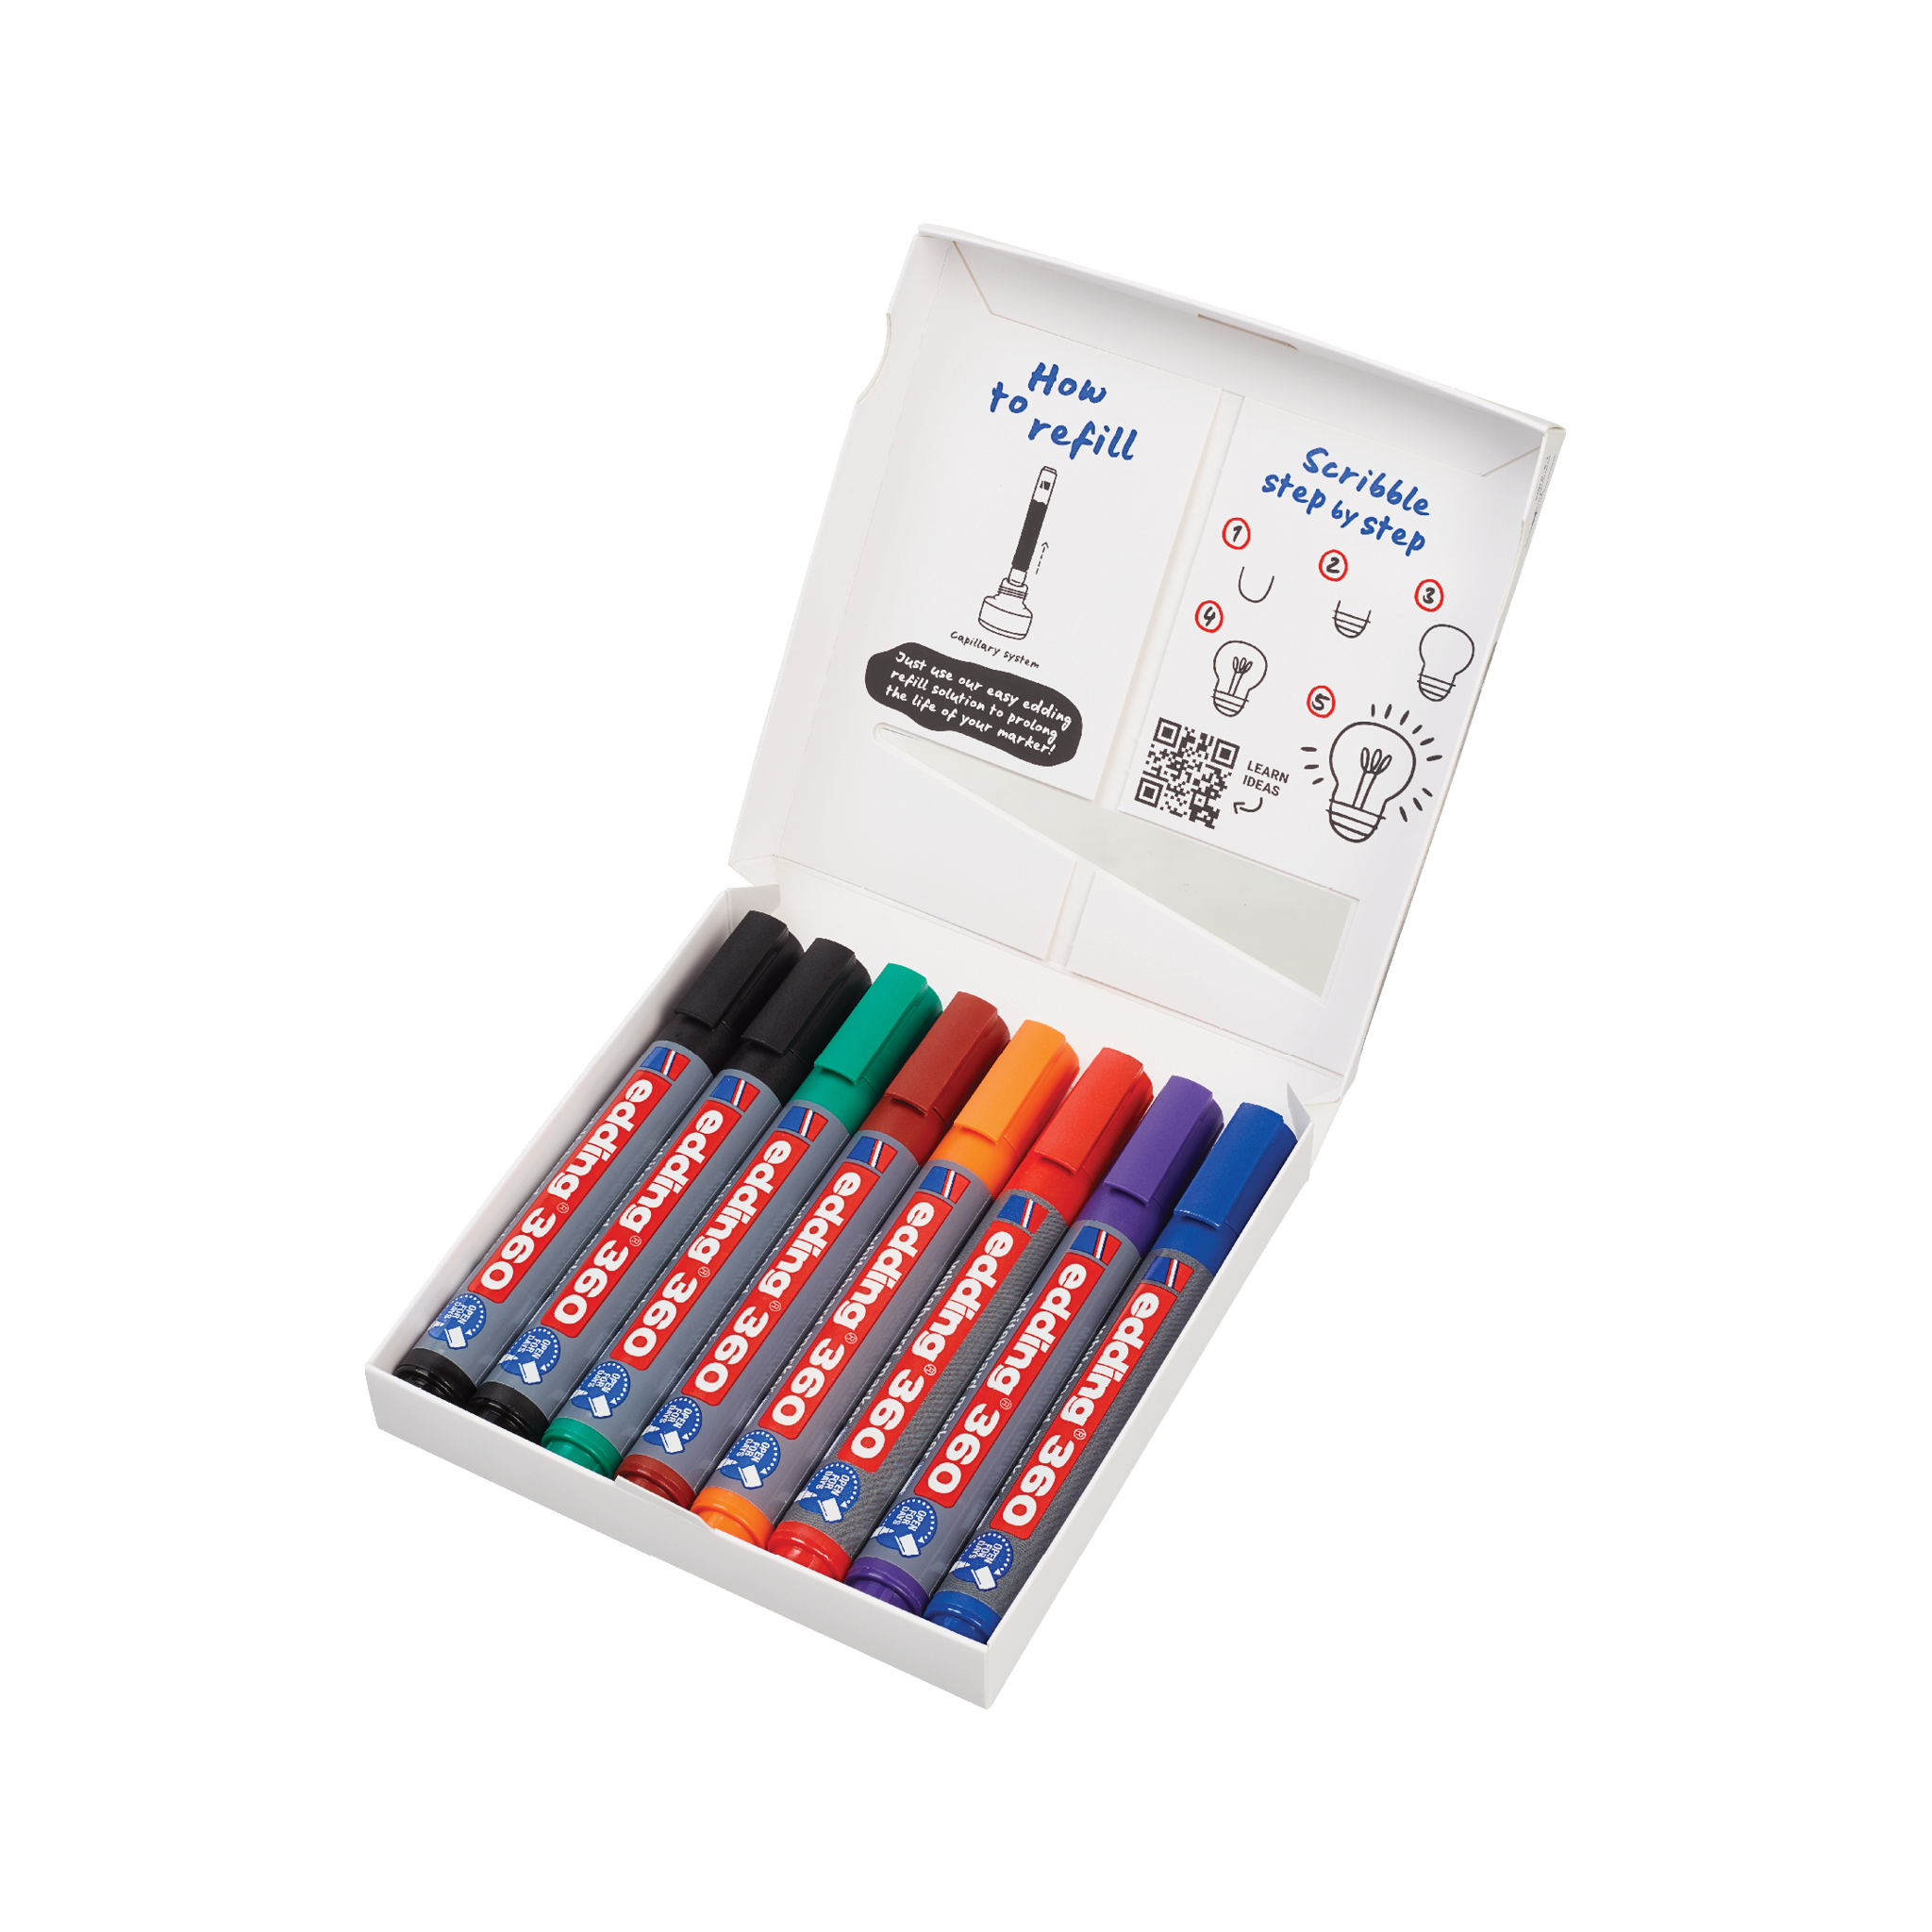 Eine Schachtel mit mehrfarbigen edding 360 Whiteboardmarker 8er-Set-Stiften mit Anweisungen zum Nachfüllen mit nachfüllbarer Tinte auf der Innenseite des Schachteldeckels.